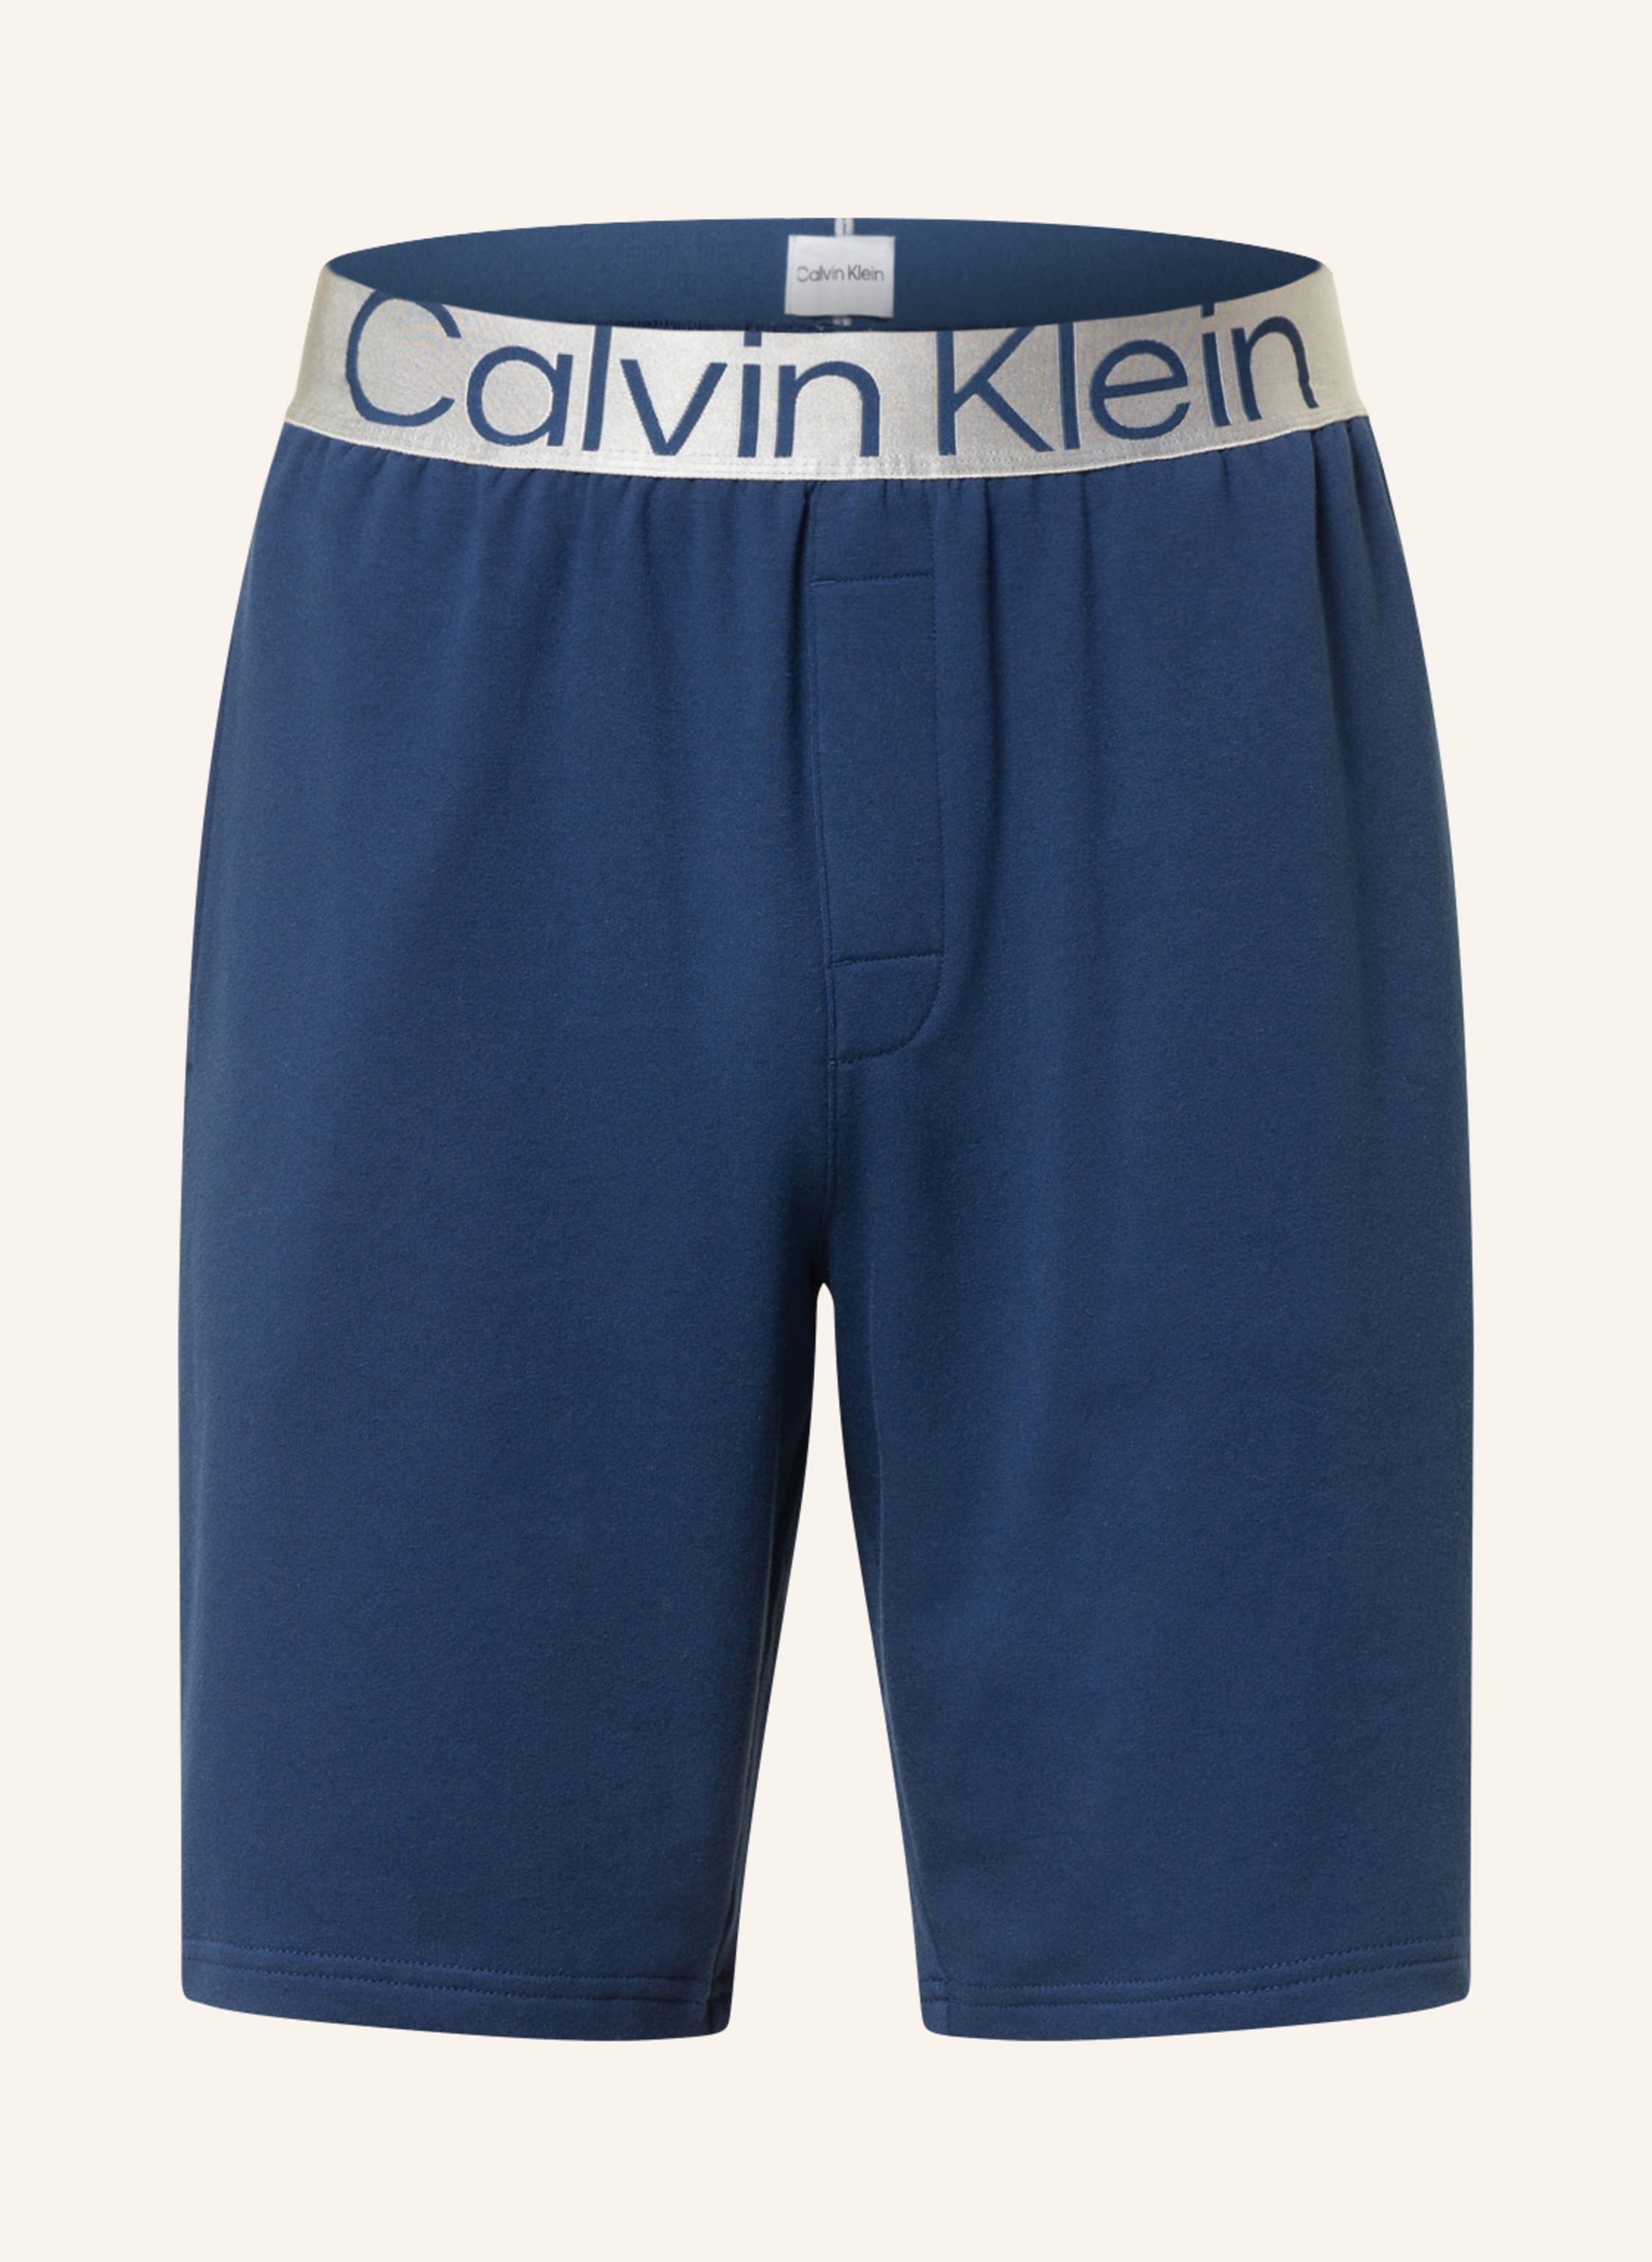 Calvin Klein Lounge shorts STEEL COTTON in dark blue | Breuninger